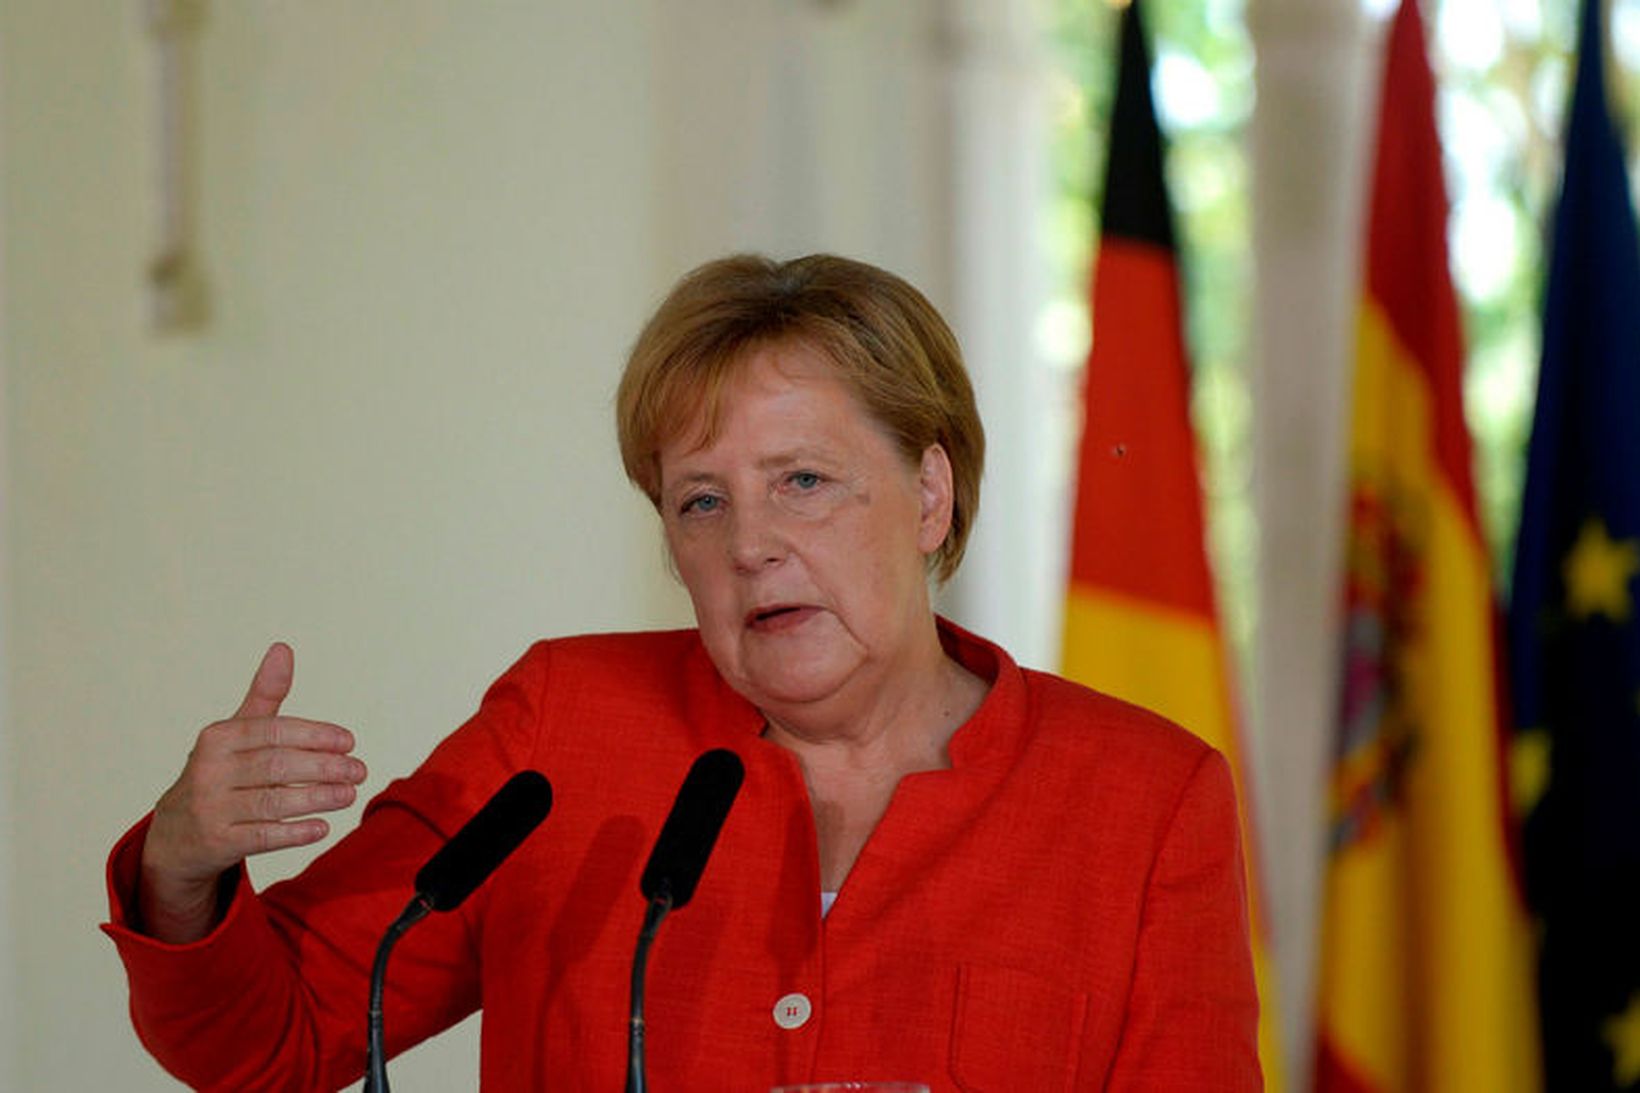 Angela Merkel, kanslari Þýskalands, segist treysta á evrópskar lausnir.